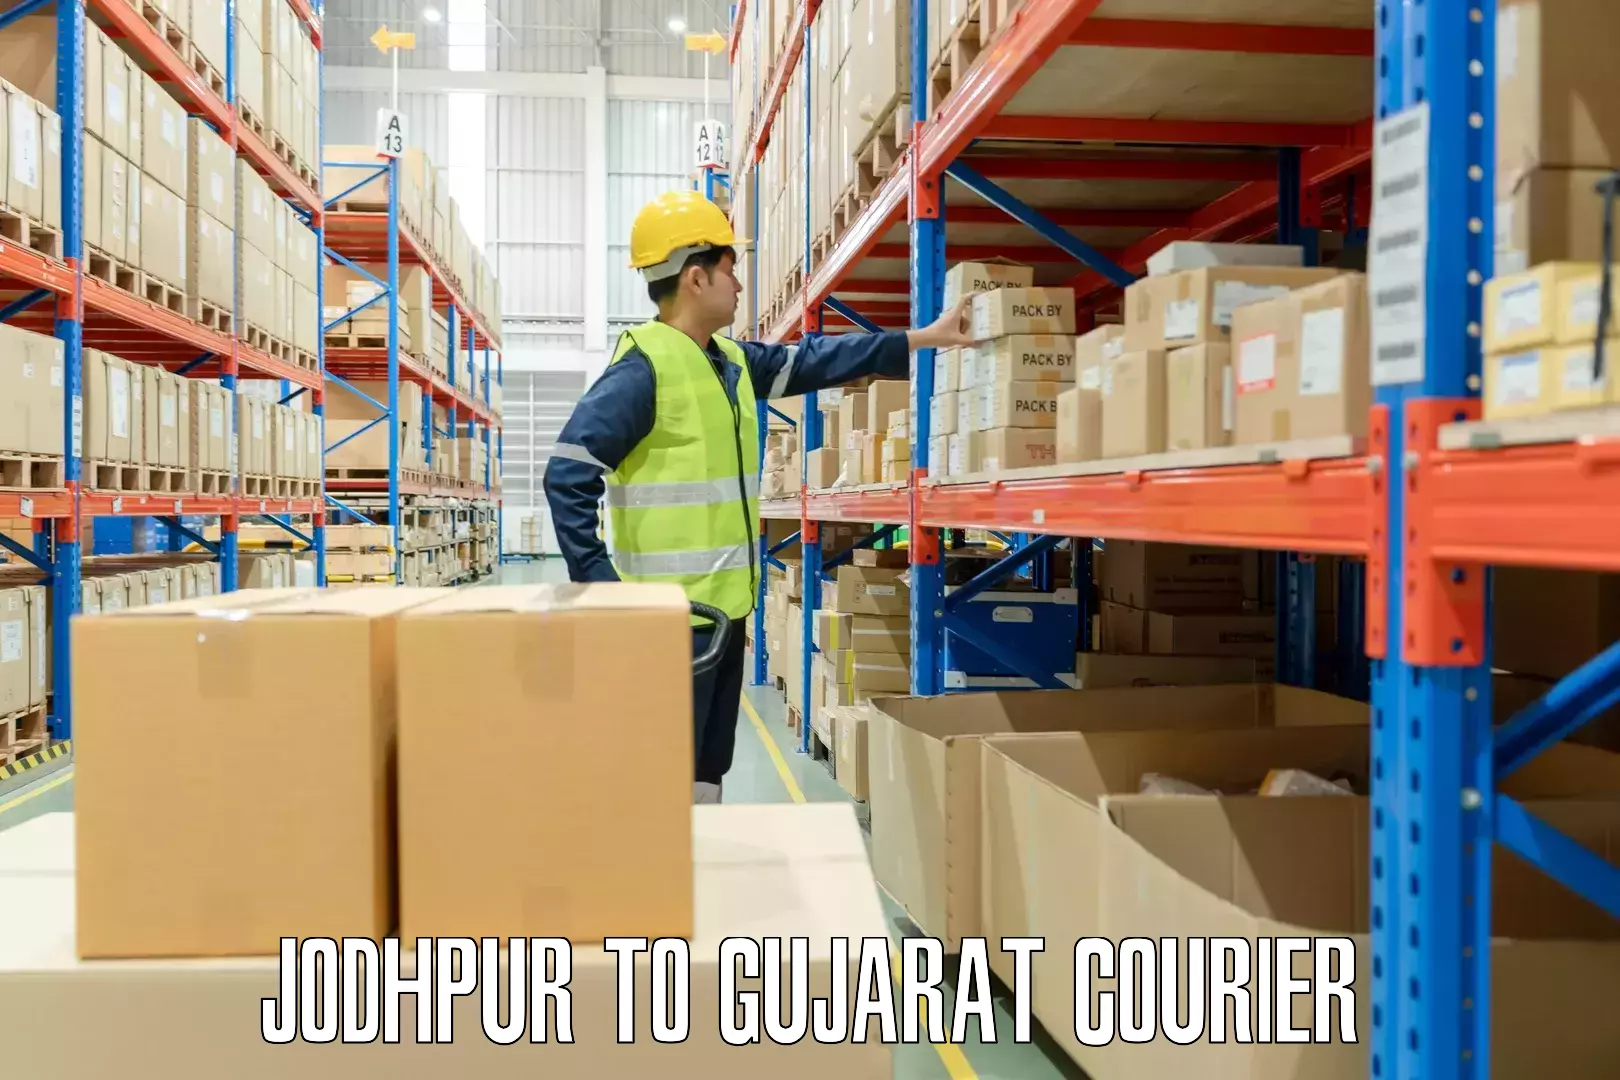 Quick luggage shipment Jodhpur to Gujarat